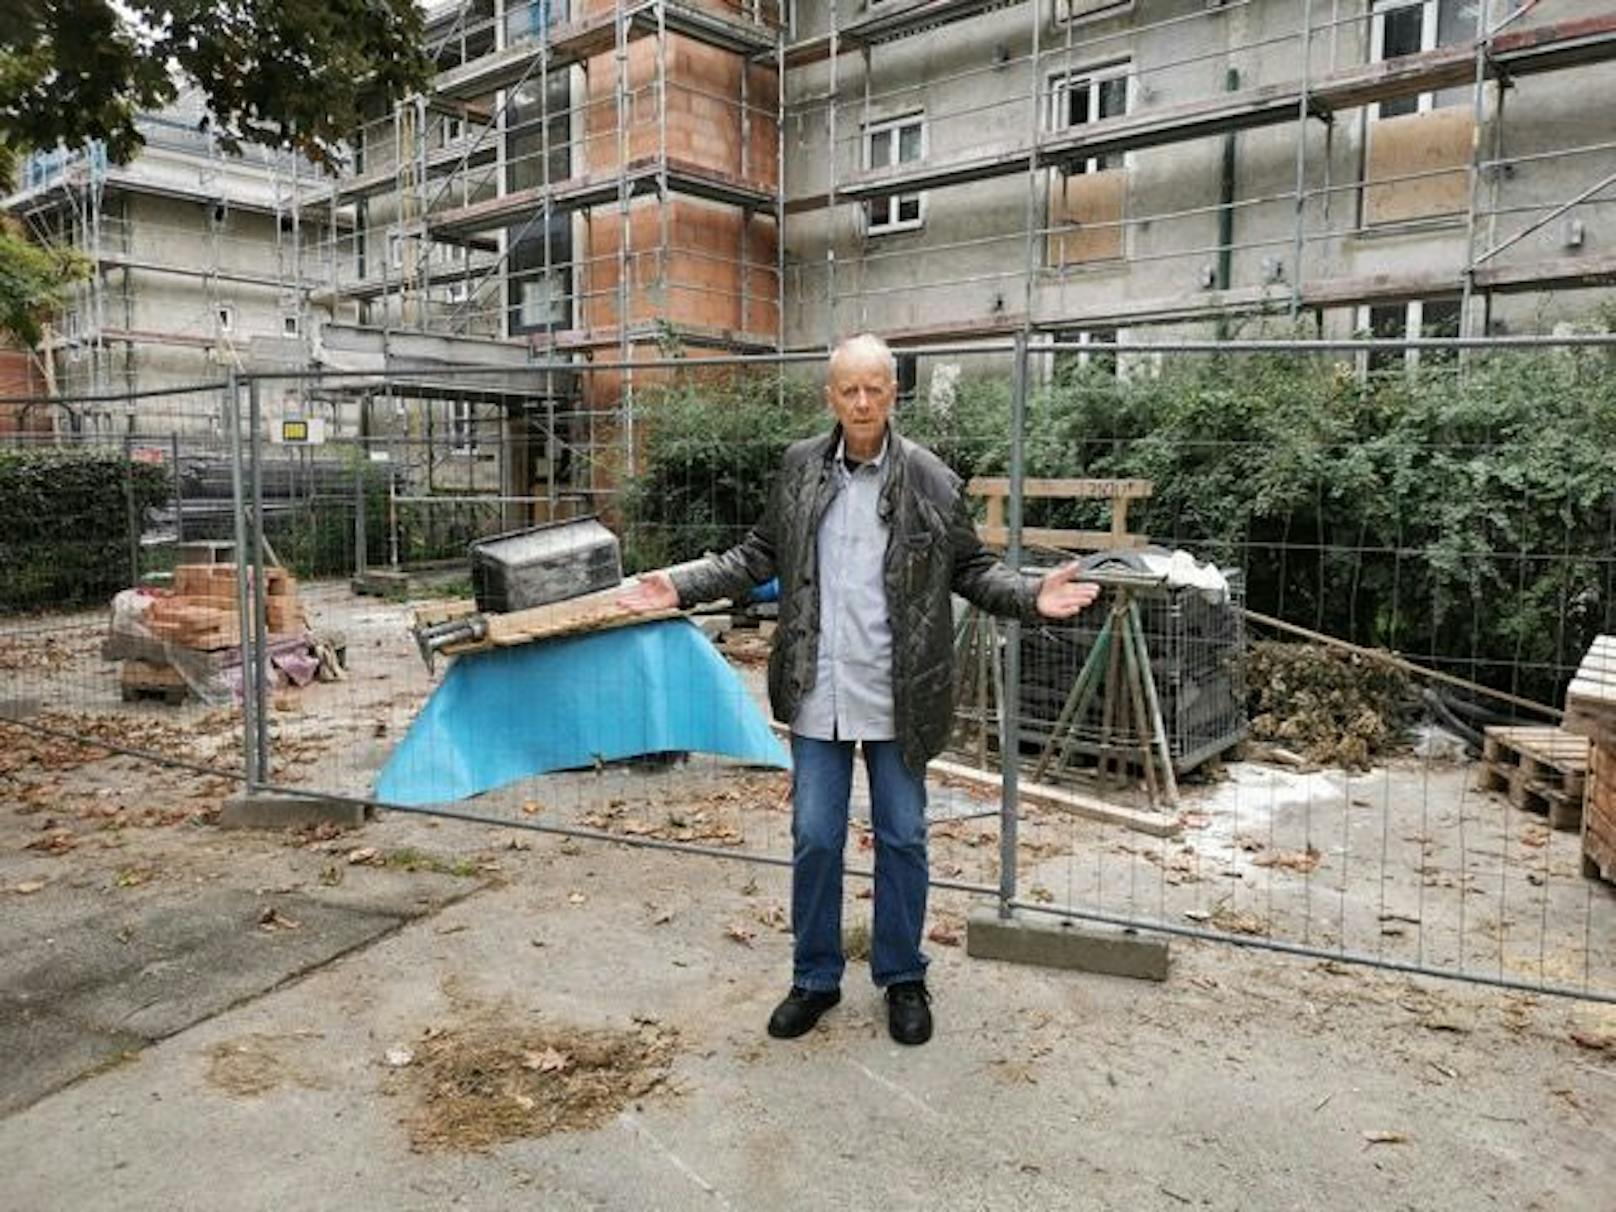 Seit 2014 wird der Gemeindebau in der Jedleseer Straße (Floridsdorf) saniert. Sieben Jahre später müssen die rund 3.000 Bewohner noch immer auf einer Baustelle leben, kritisiert WIFF-Chef Hans Jörg Schimanek.